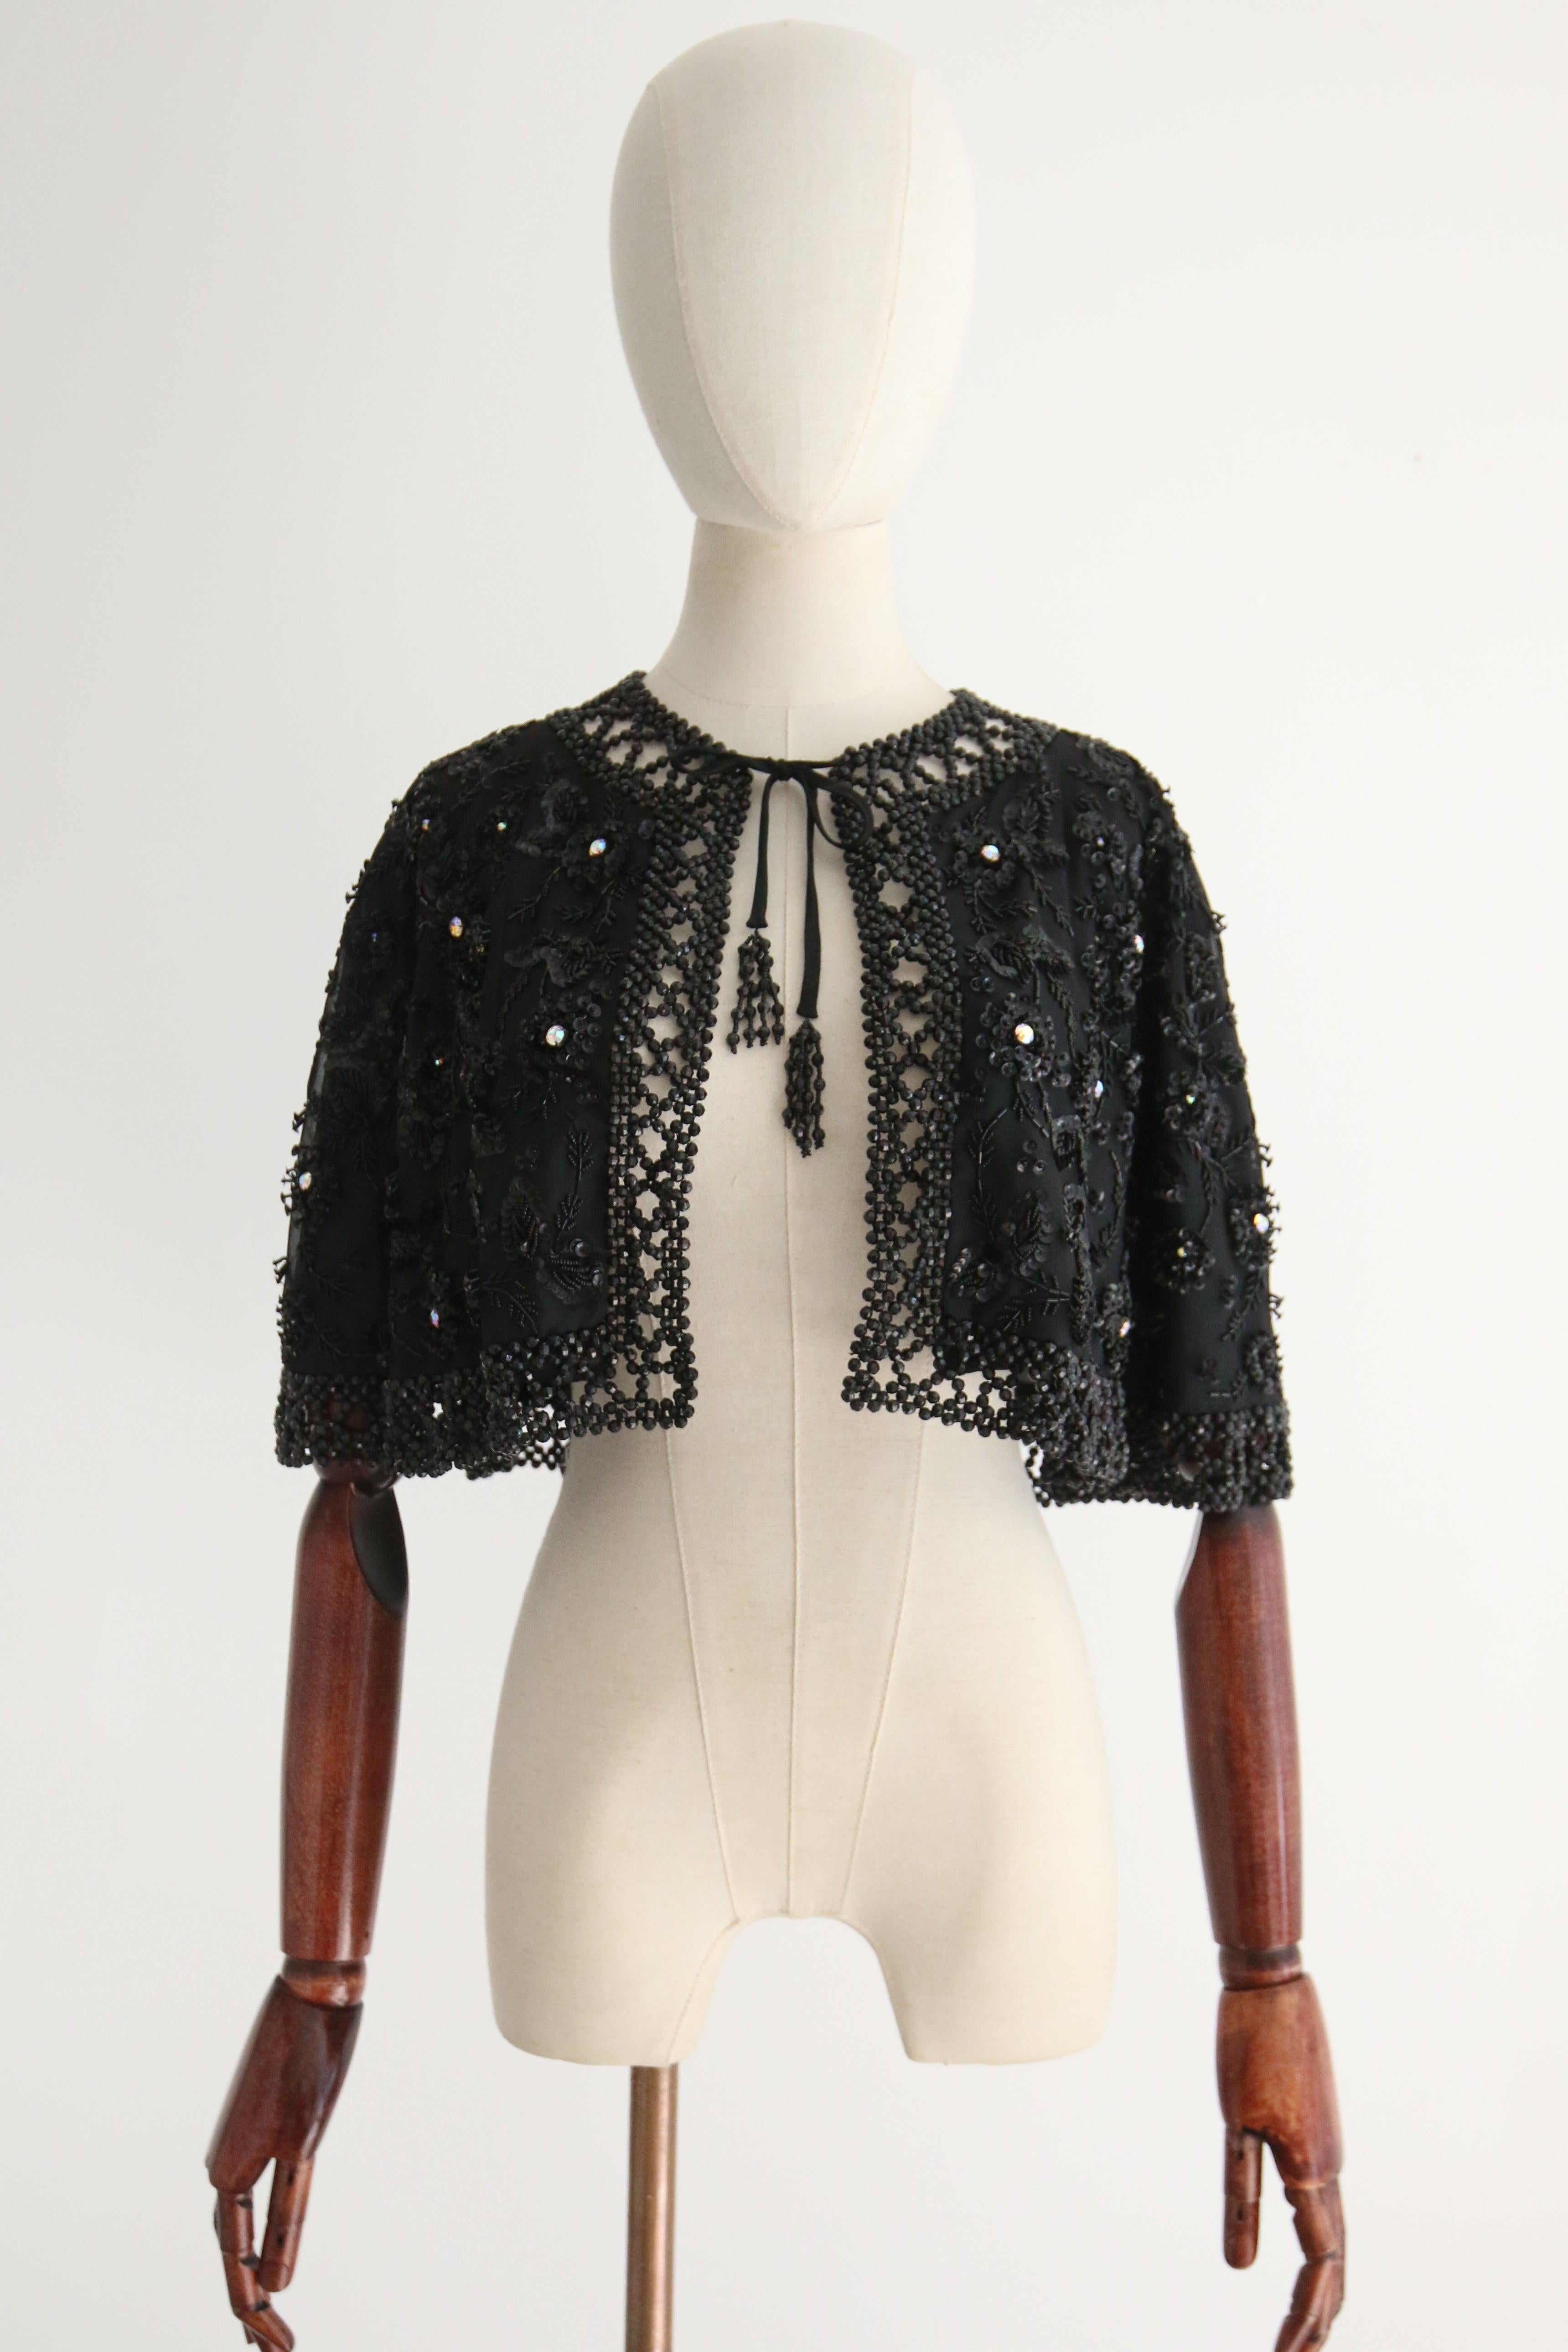 Dieses göttliche schwarze Schultercape aus den 1960er Jahren, das mit schwarzen Pailletten und Perlen verziert ist und mit großen, schillernden Strasssteinen in Krallenfassung in einem floralen Muster akzentuiert ist, ist der perfekte Abschluss